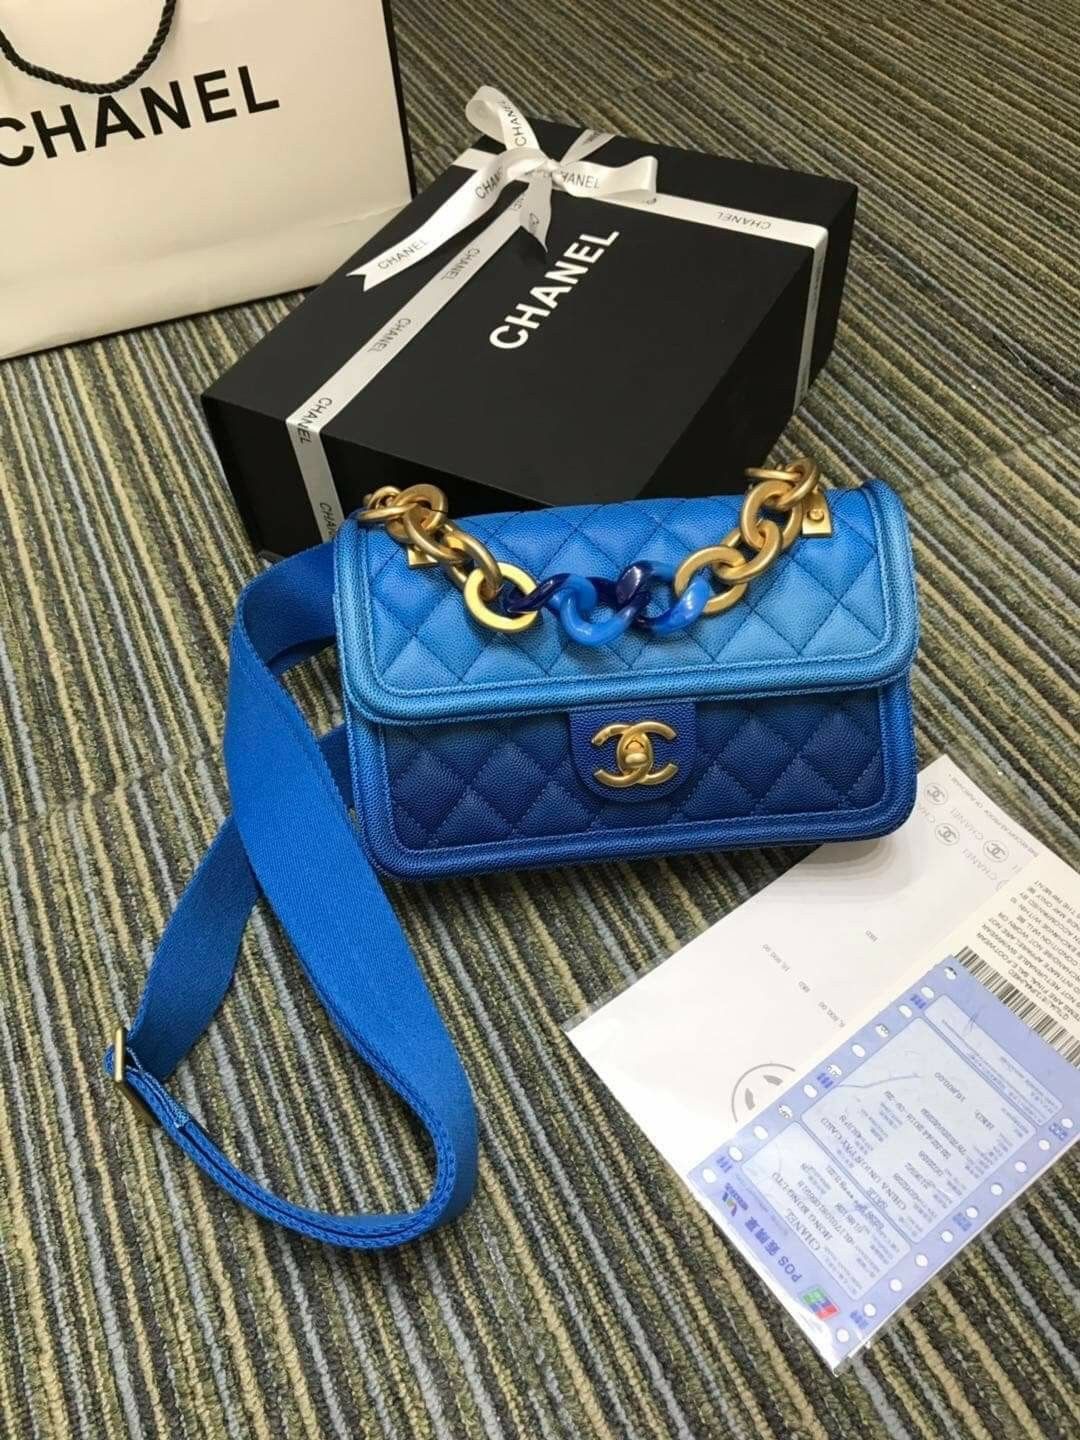 Chanel Mini Classic flap bags